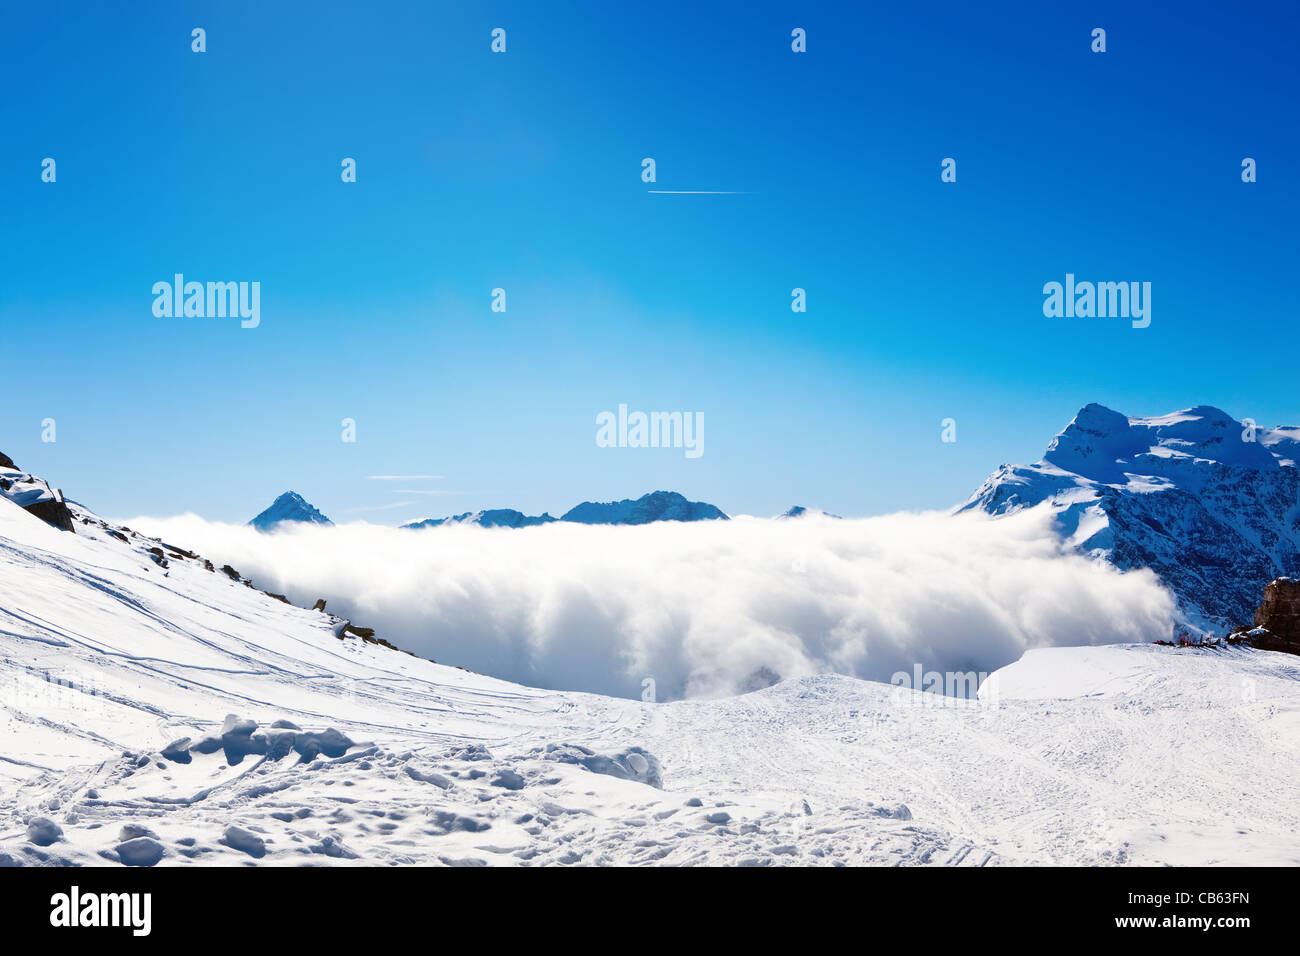 Soleil et nuages sur les montagnes d'hiver, couverte de neige Banque D'Images